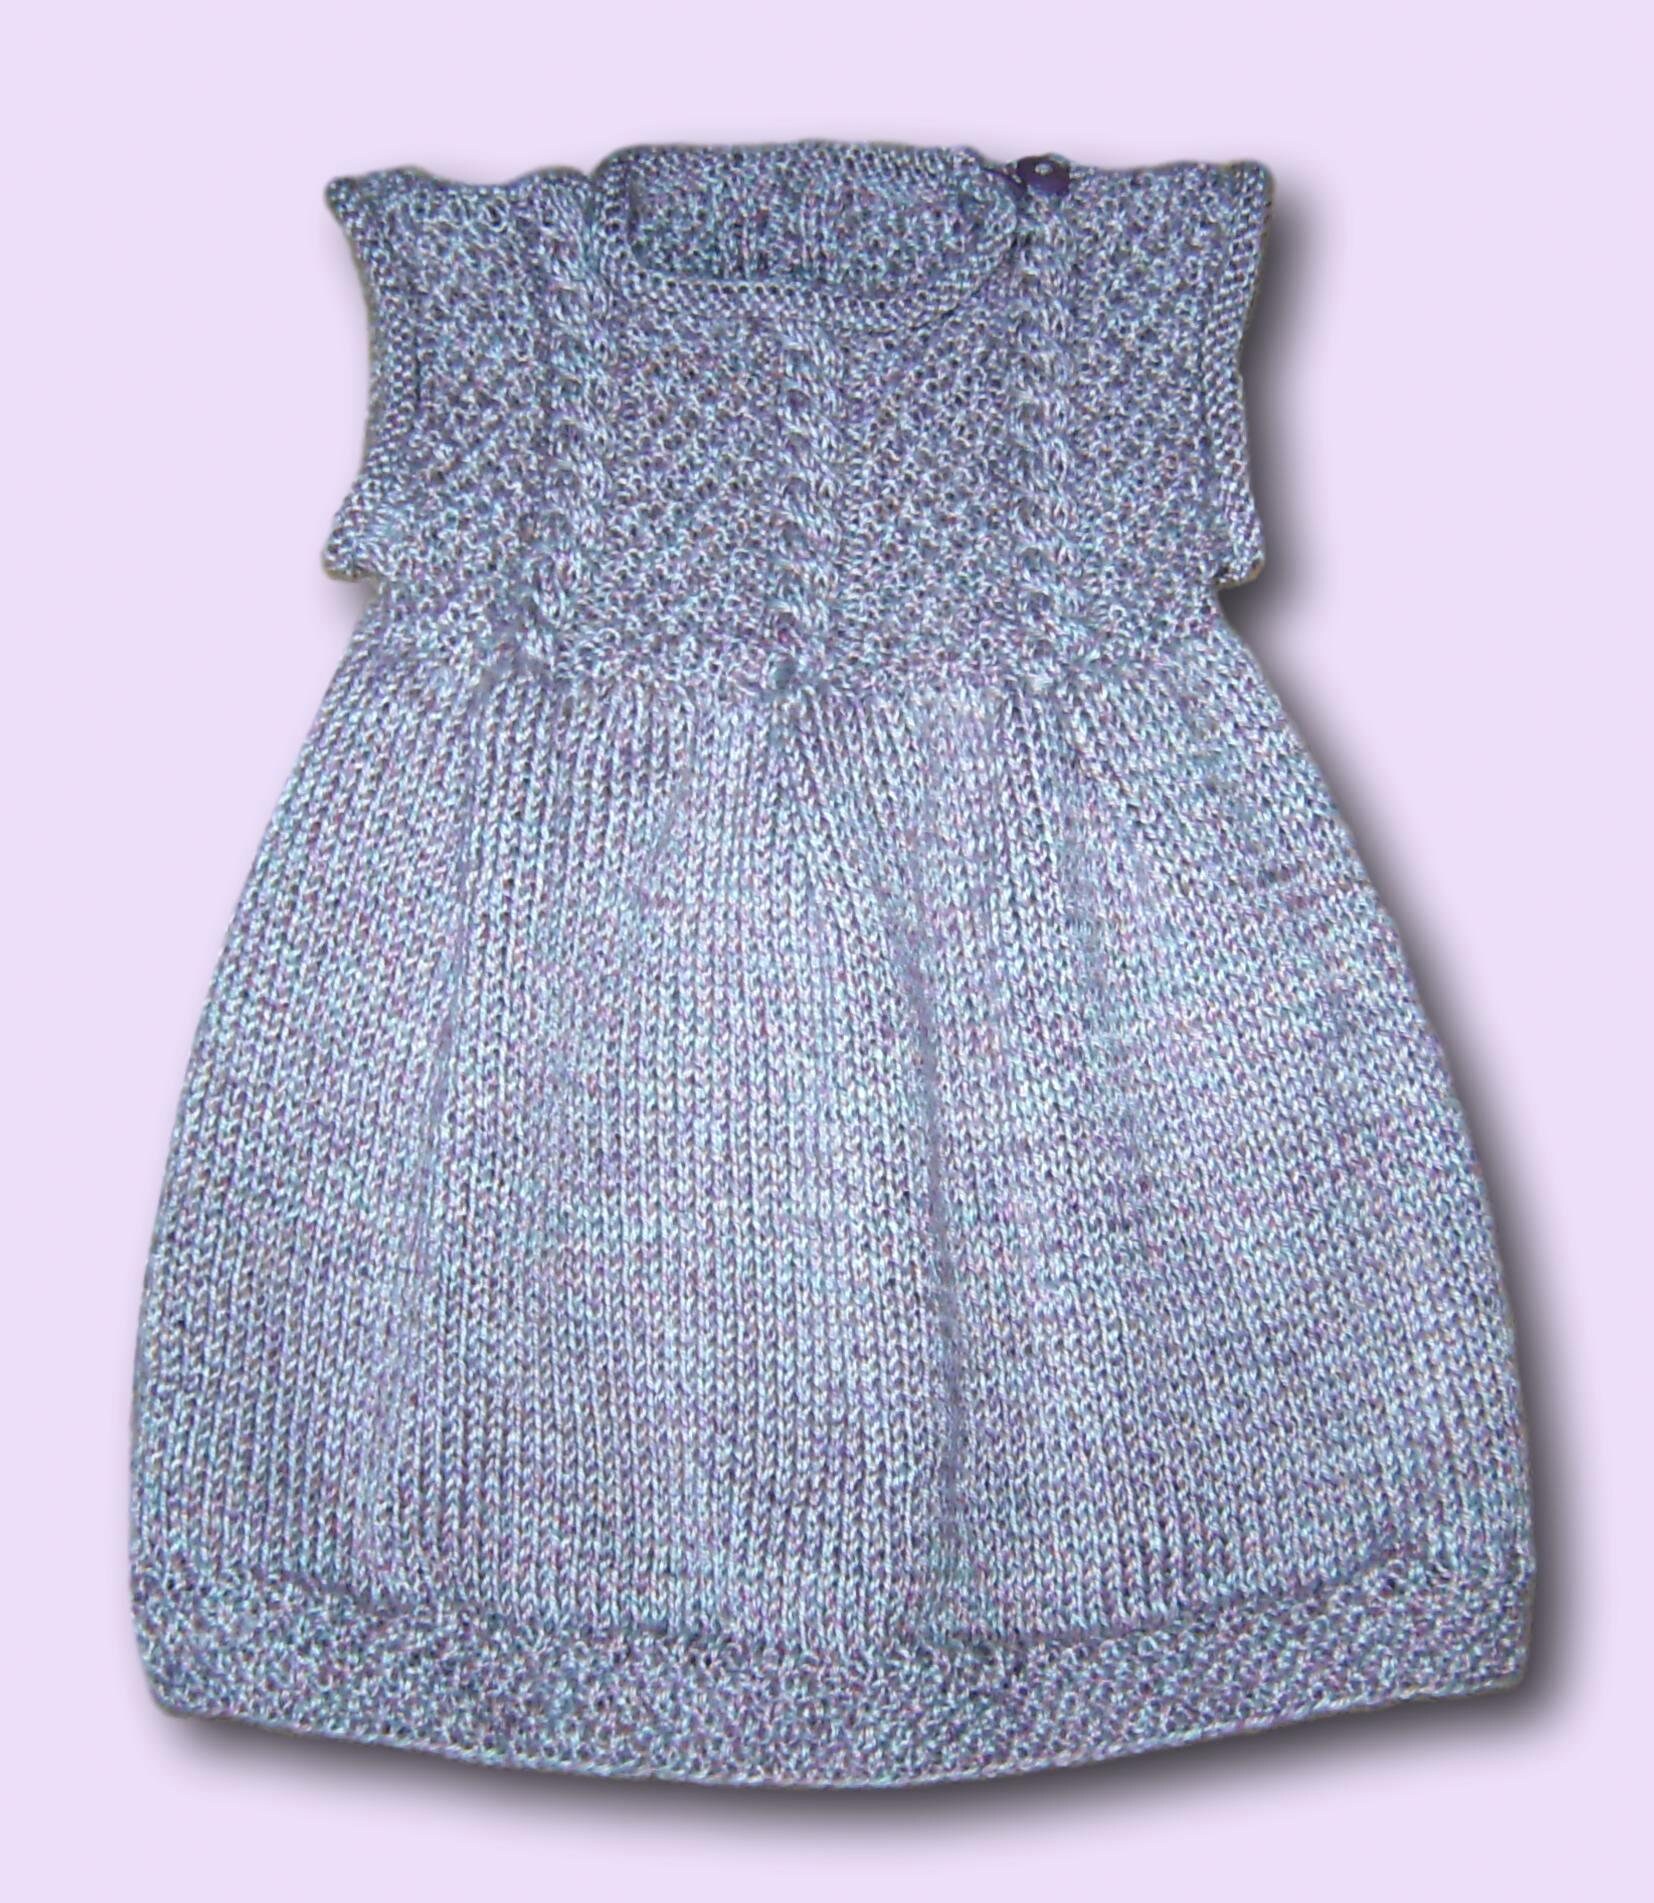 Baby Mädchen Kleid Strickkleid Gr 86 92 Perlmutt Grau Beige Flieder Zopfmuster Neu Handmade Baby Girls Dress 12 - 18 24 Months Knitted von Puttelmuttel